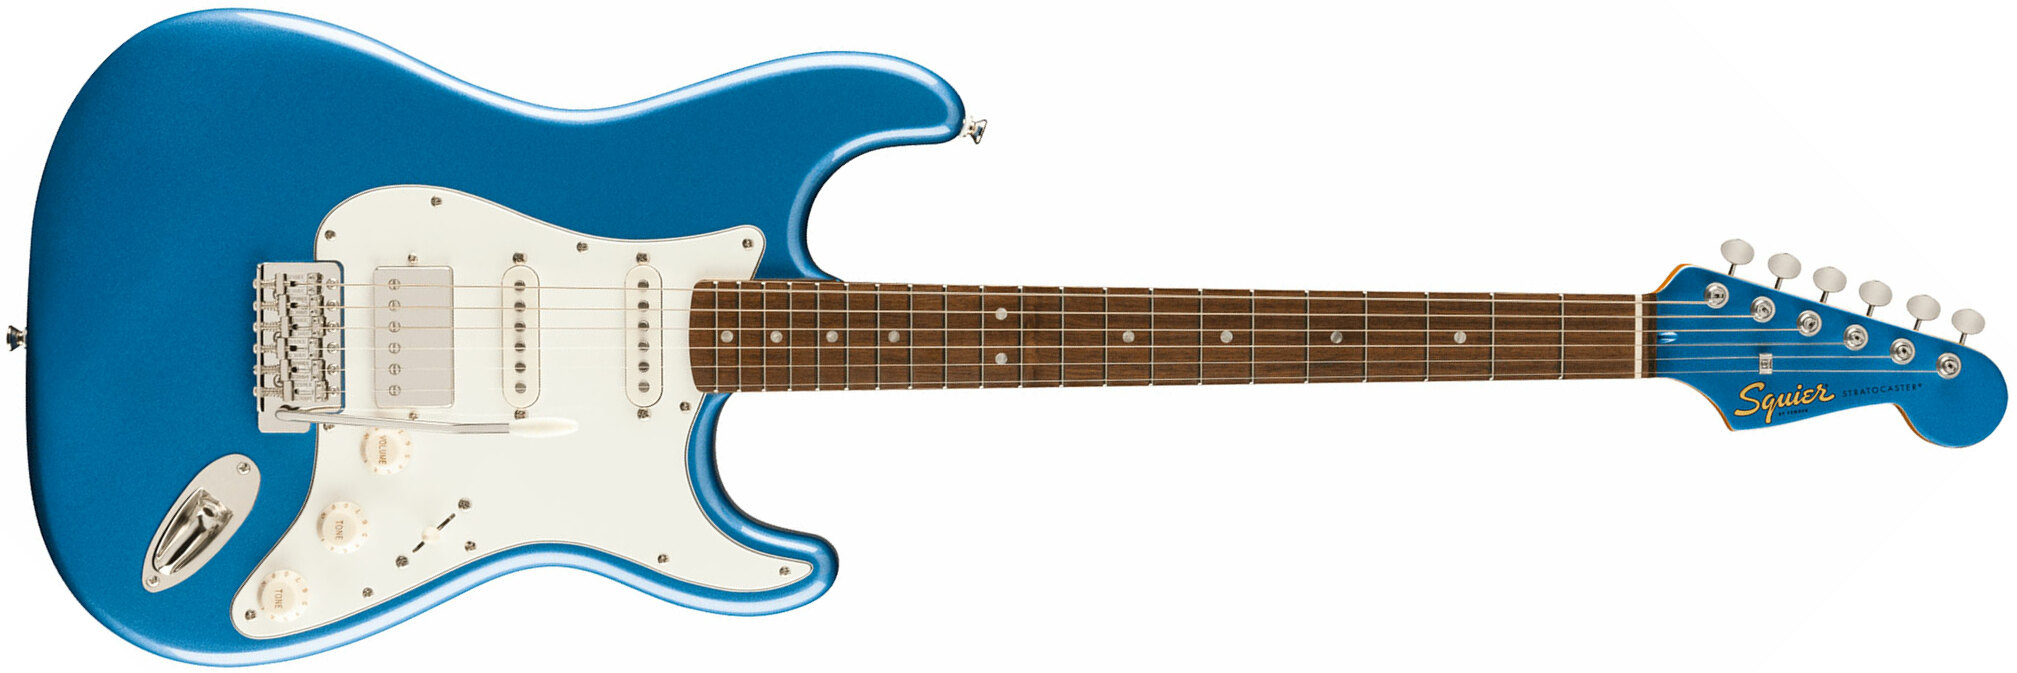 Squier Strat 60s Classic Vibe Ltd Hss Trem Lau - Lake Placid Blue - Guitarra electrica retro rock - Main picture